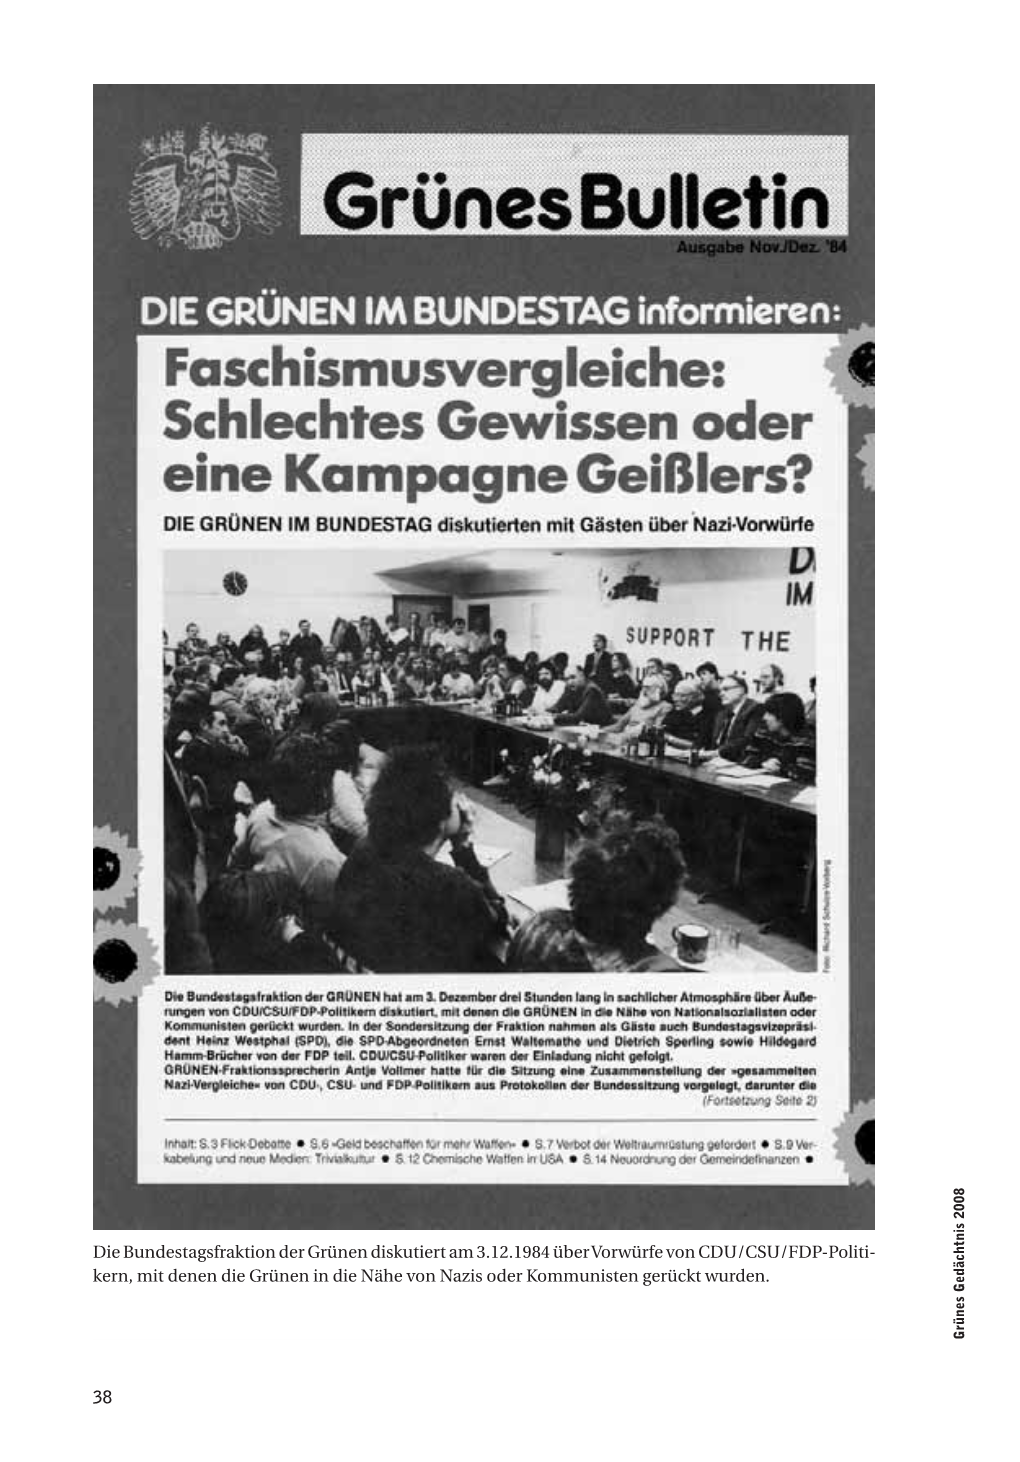 38 Die Bundestagsfraktion Der Grünen Diskutiert Am 3.12.1984 Über